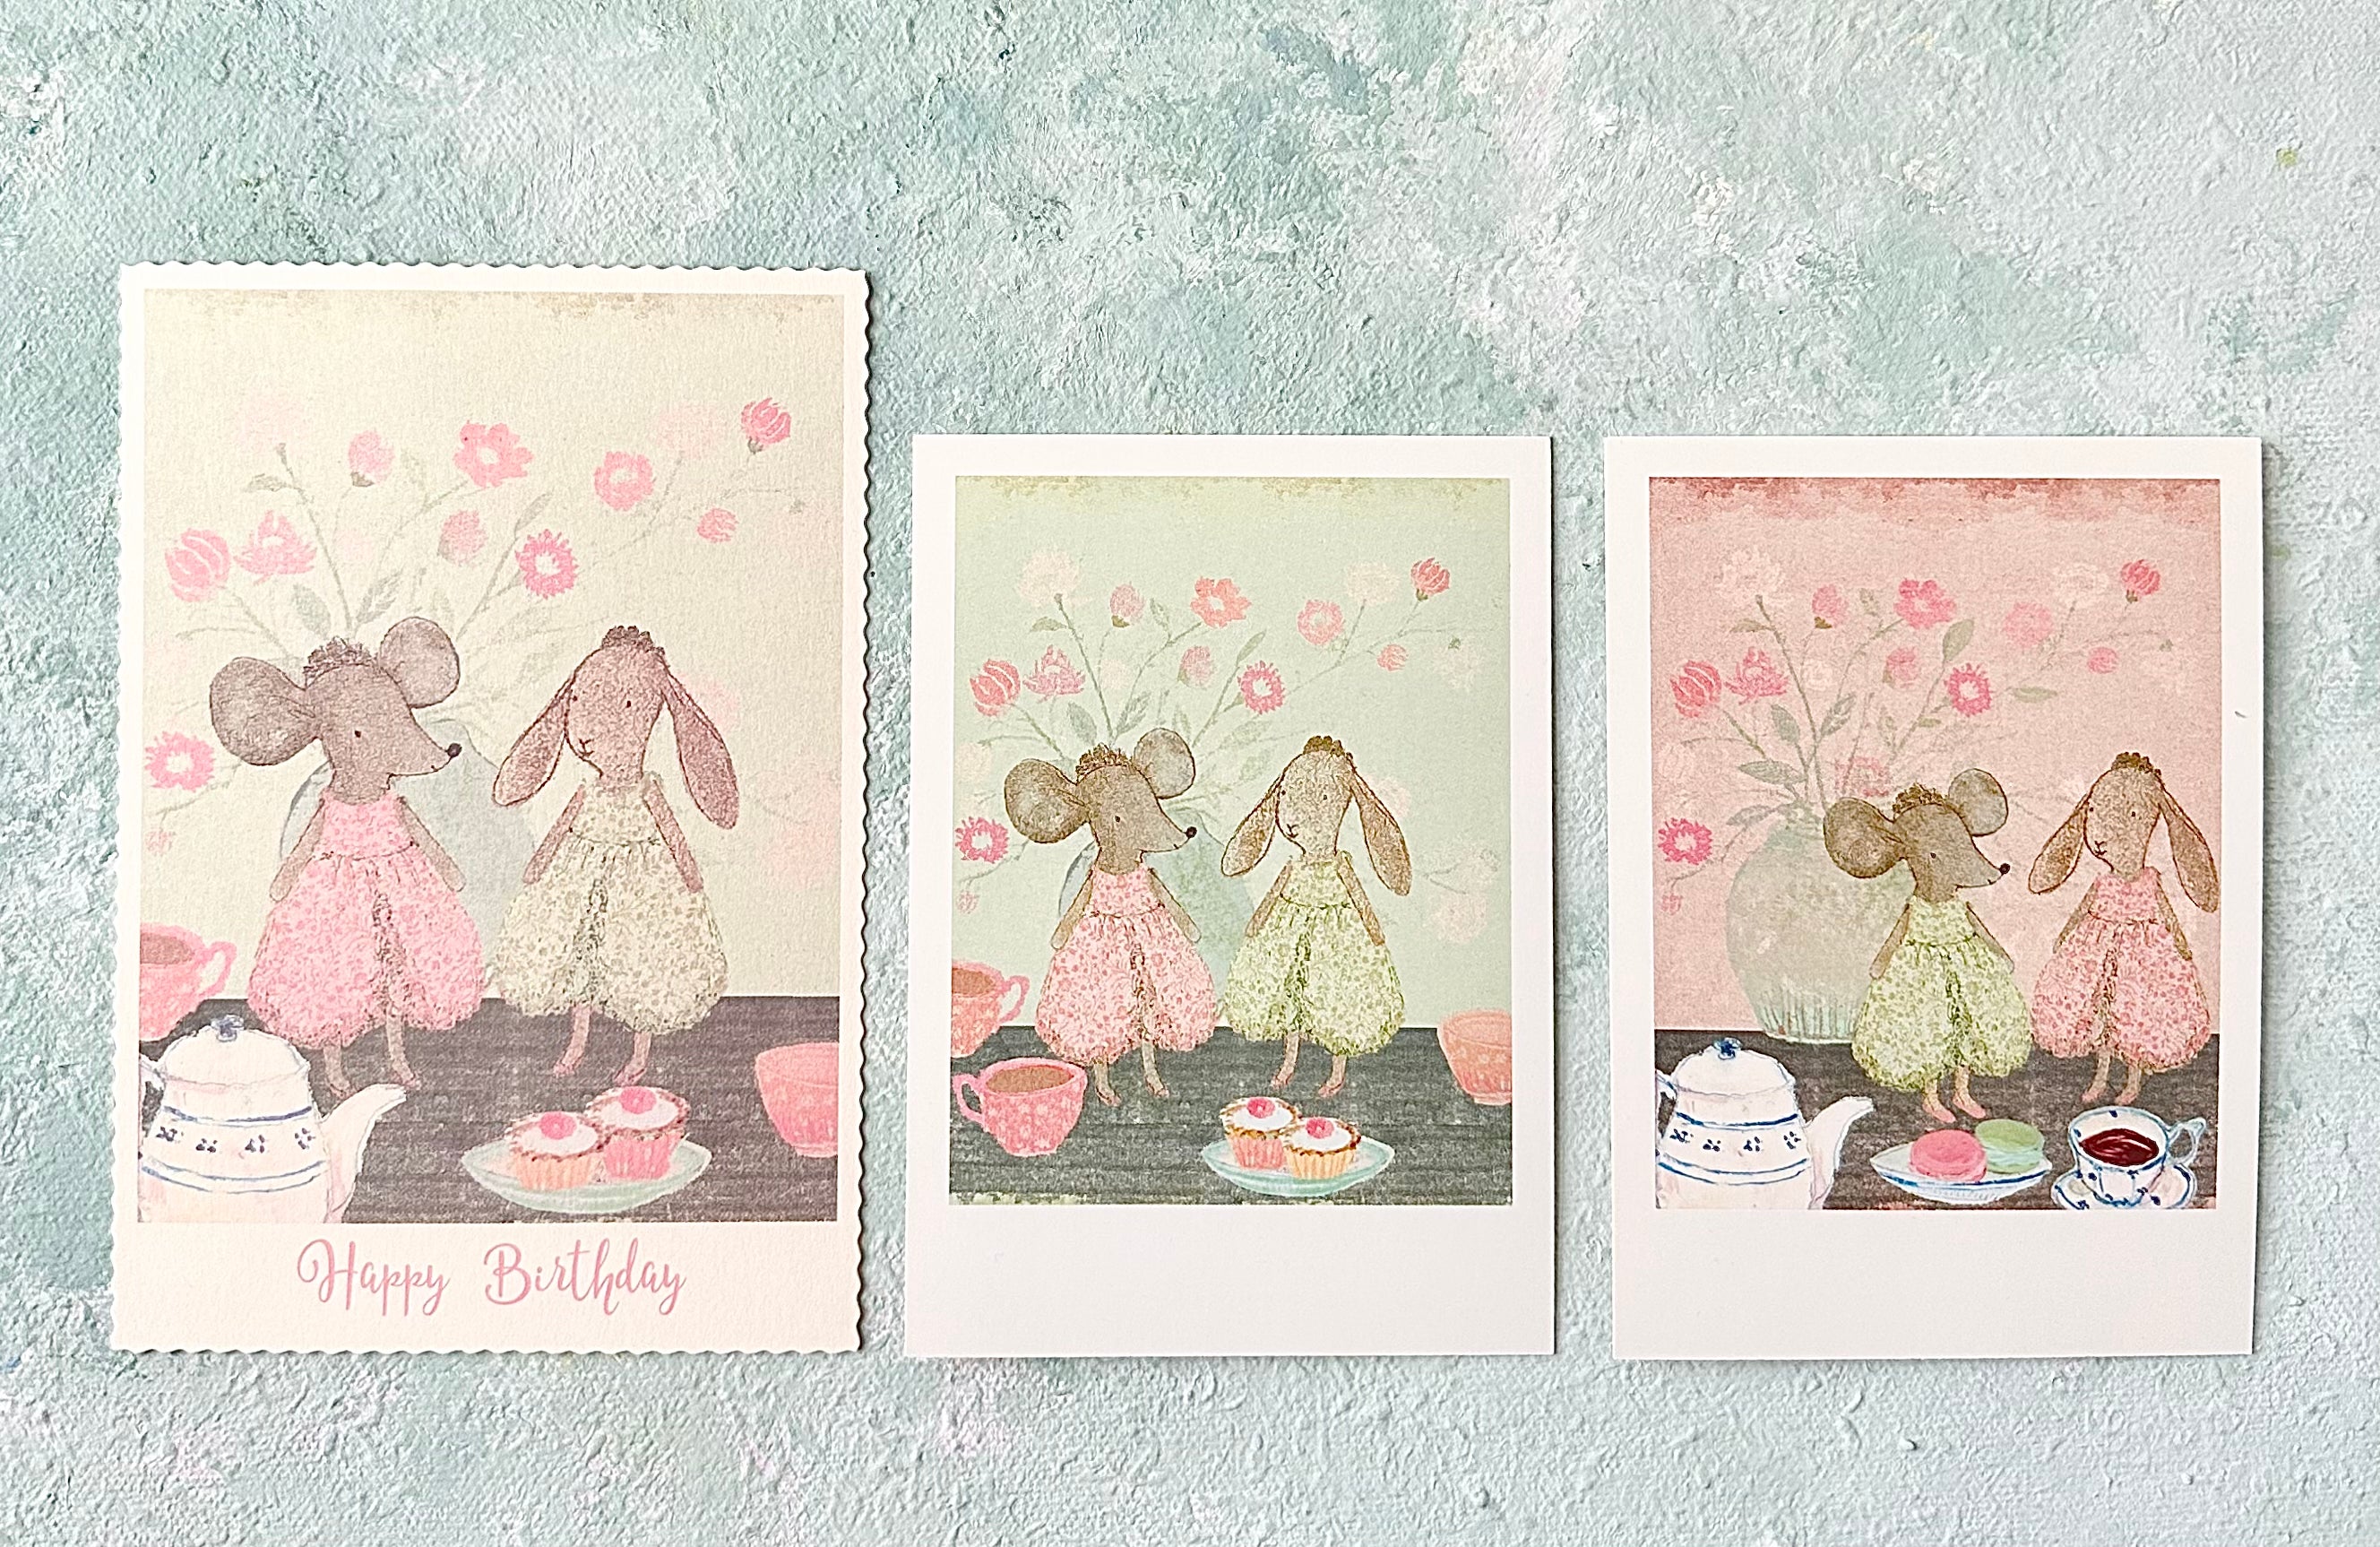 Birthday Card “Princesses” - 2018